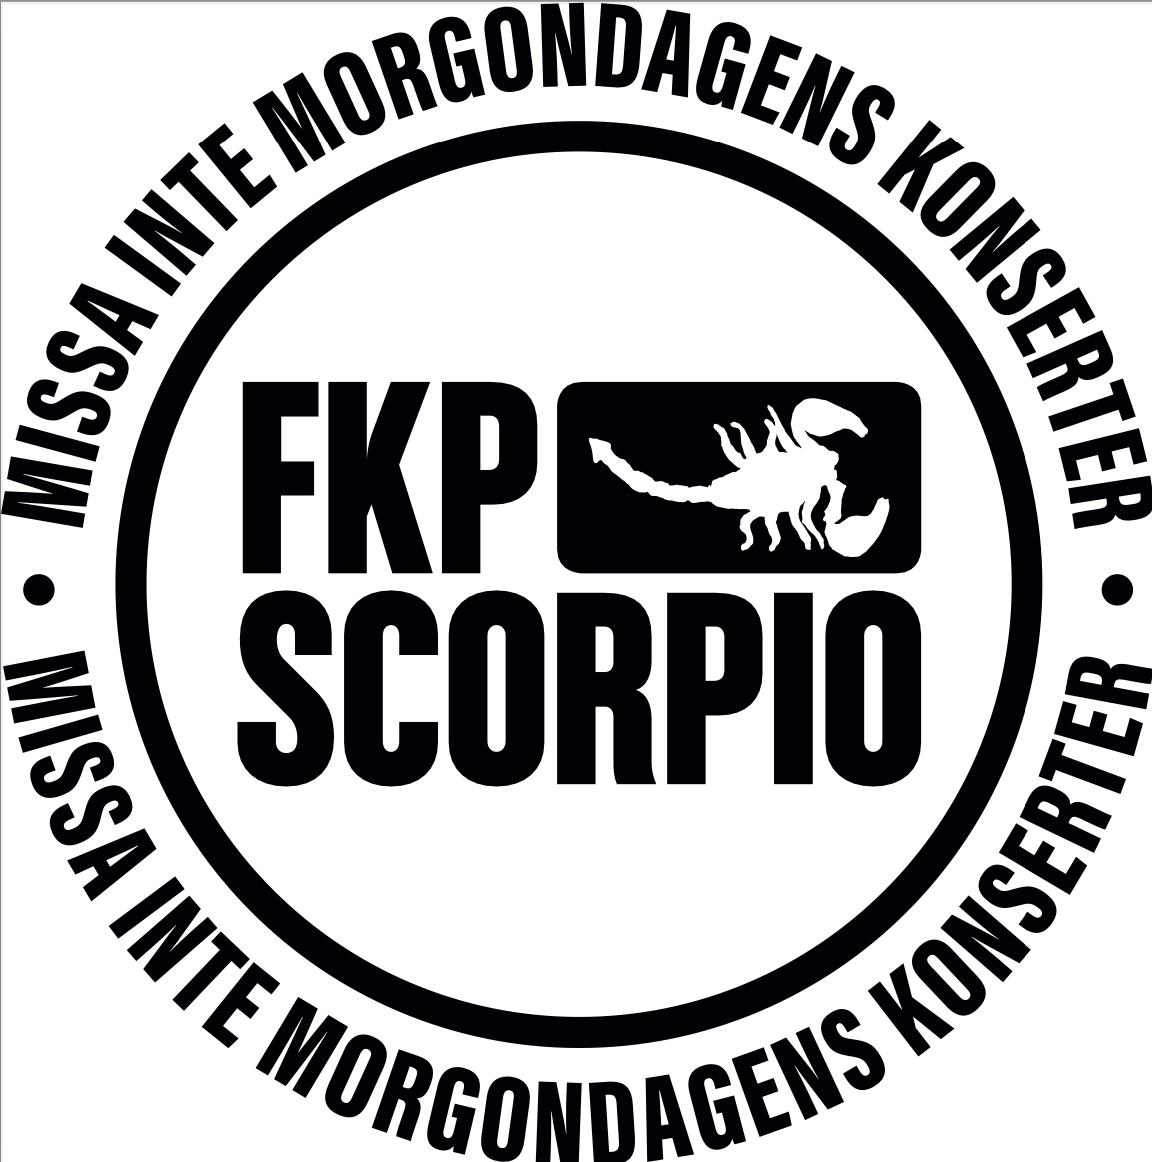 Logo of FKP Scorpio